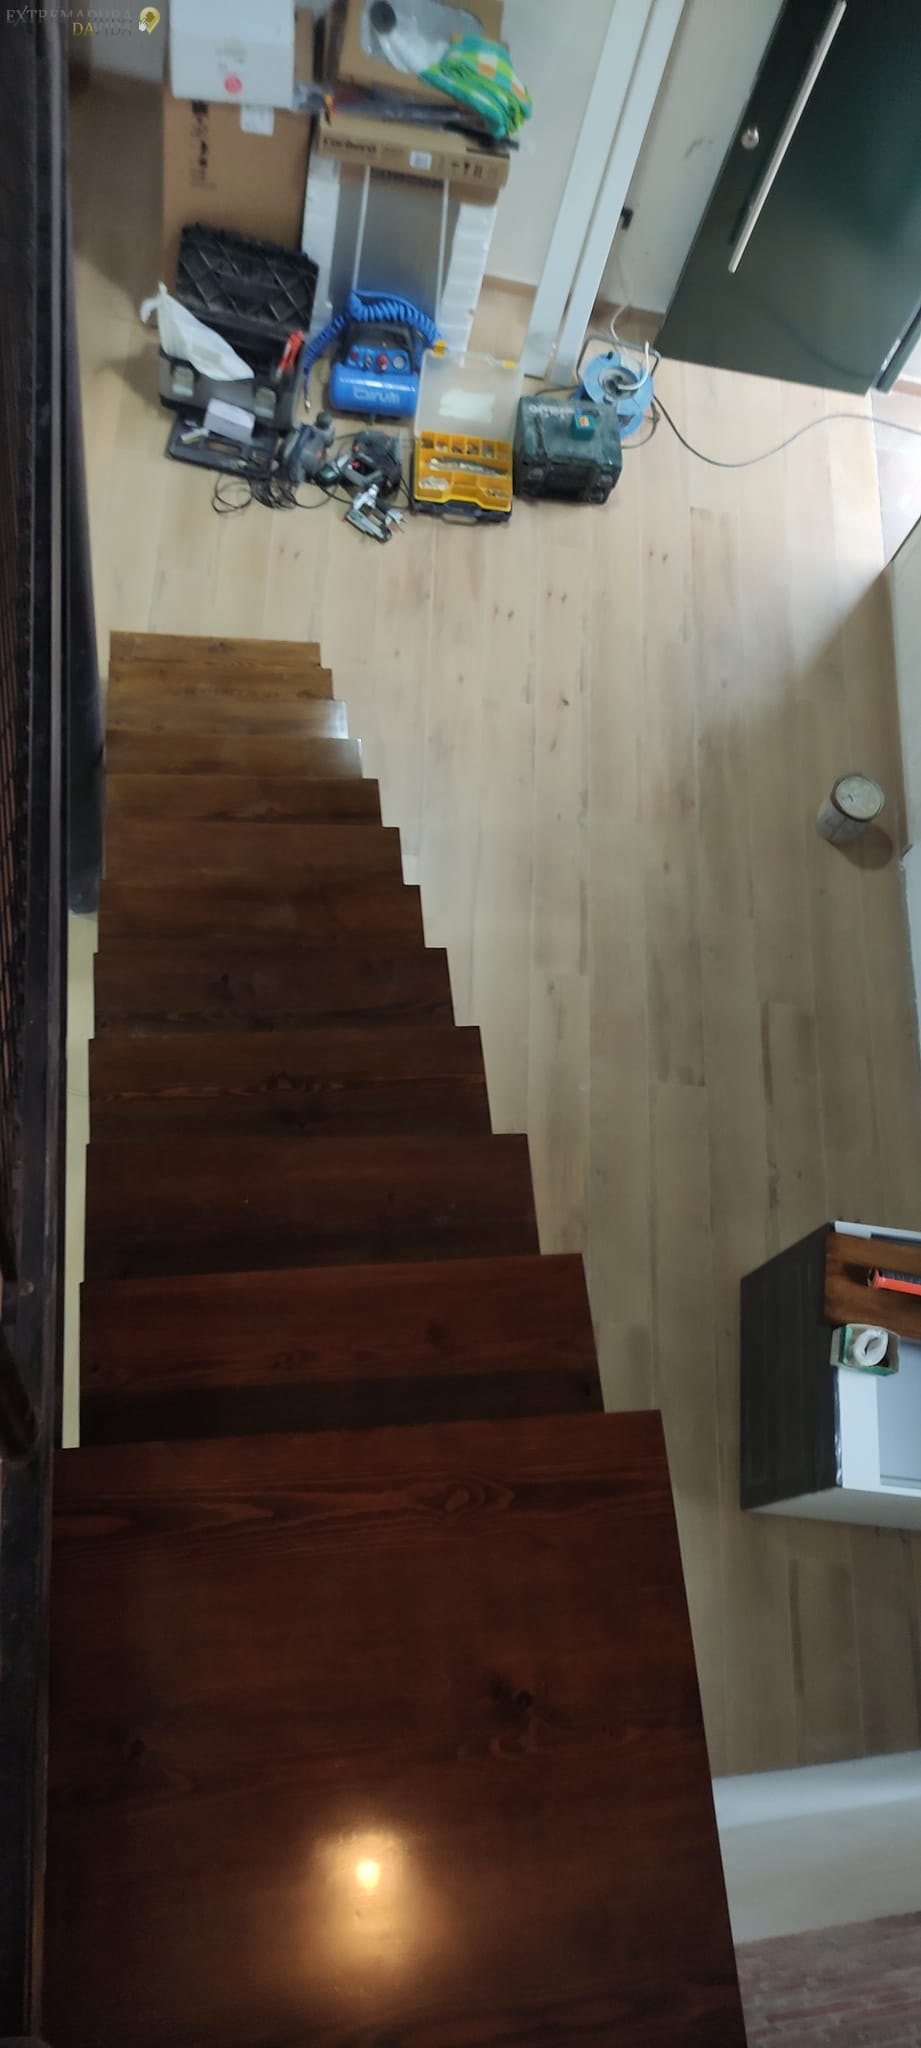 Escalera de madera Carpinteros en Navalmoral de la Mata Cocinas baños Escaleras de Madera David Ballesteros La Vera